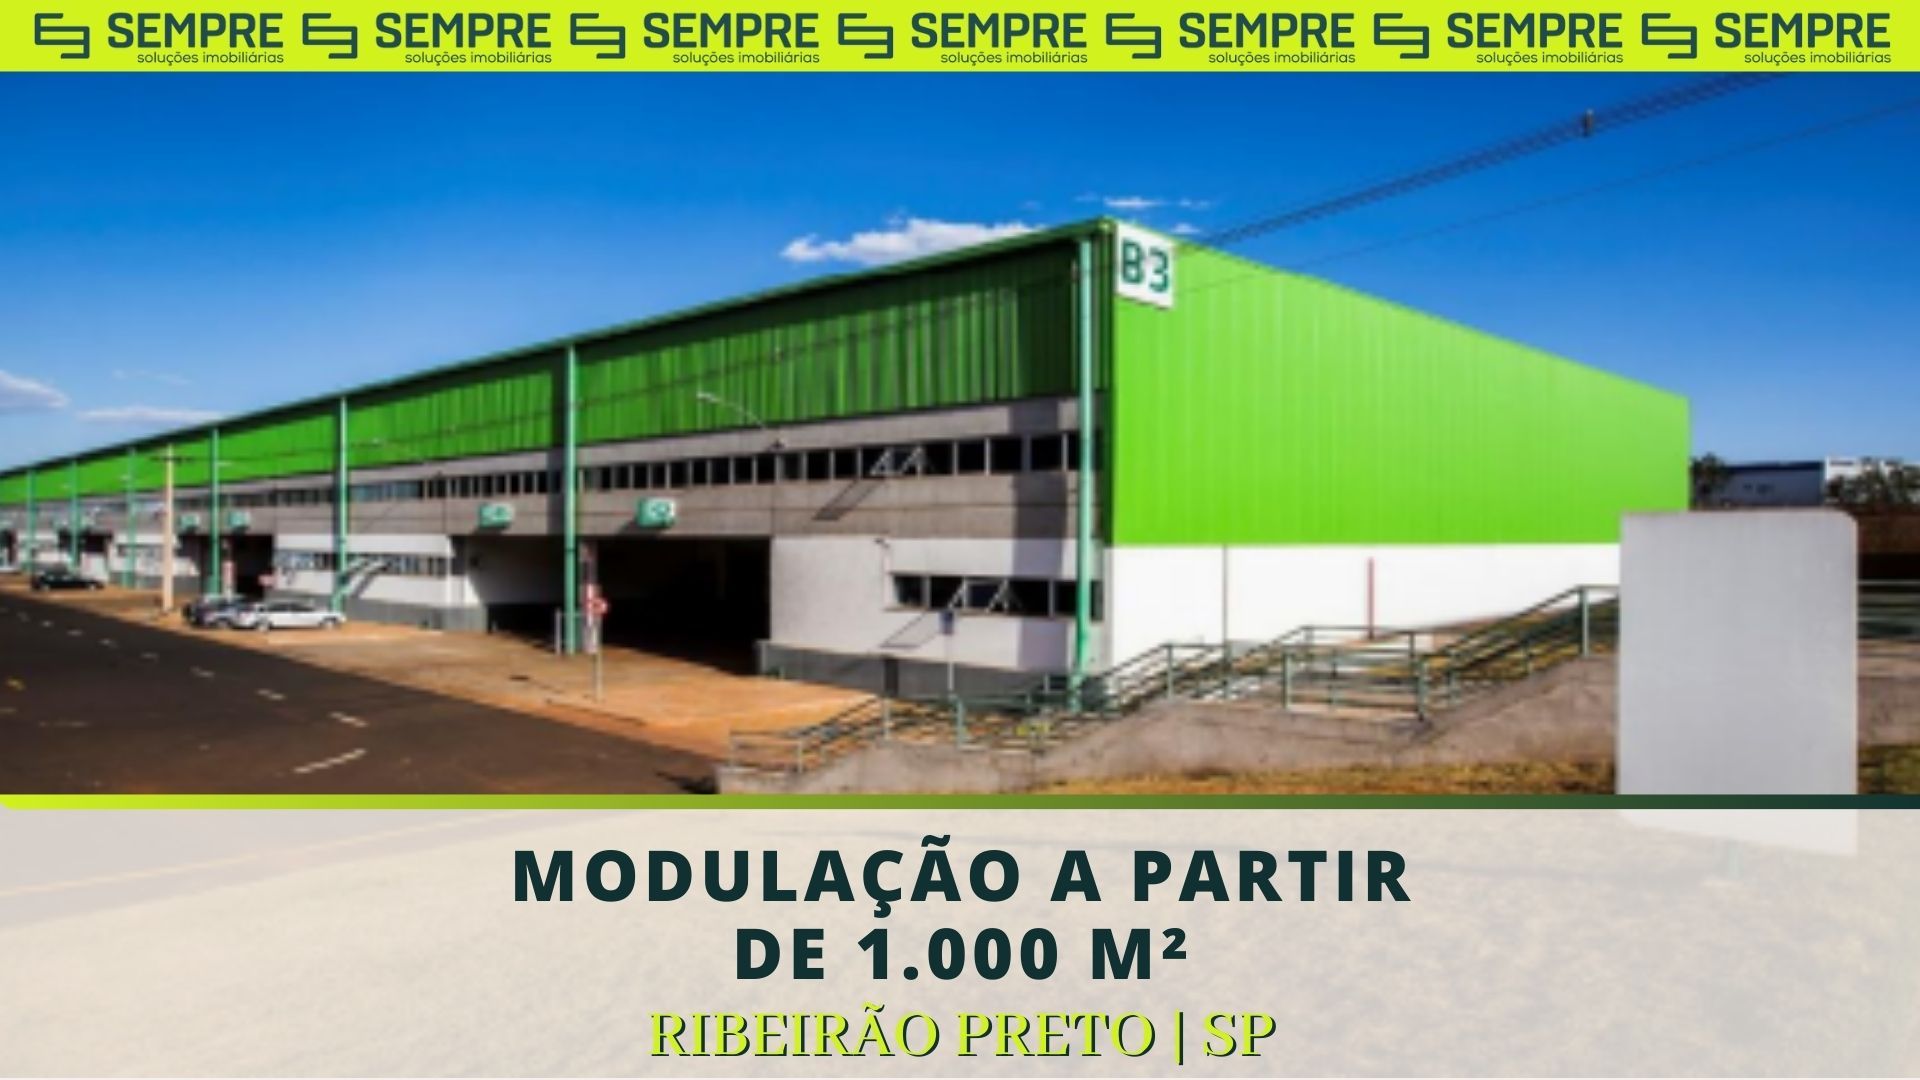 Industrial HGLG Ribeirão Preto - Ribeirão Preto SP